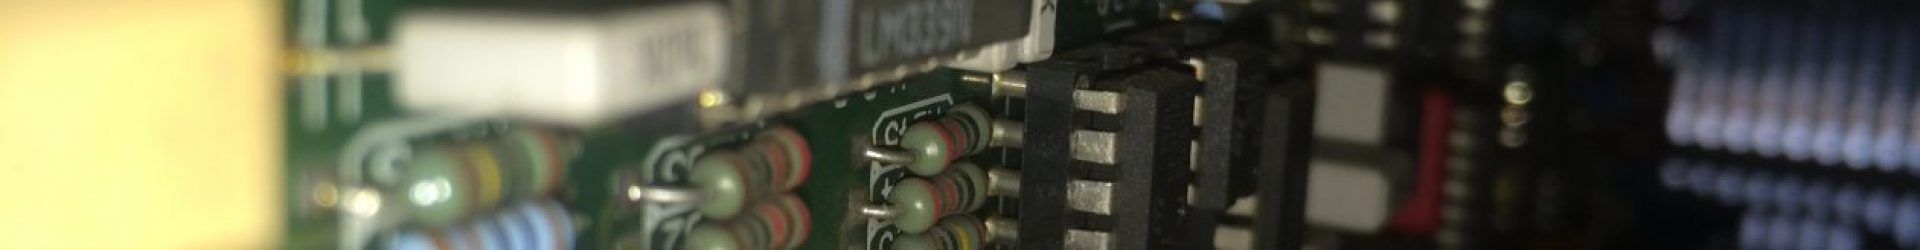 ShoutingElectronics #16 – Samsung Backlight Fault